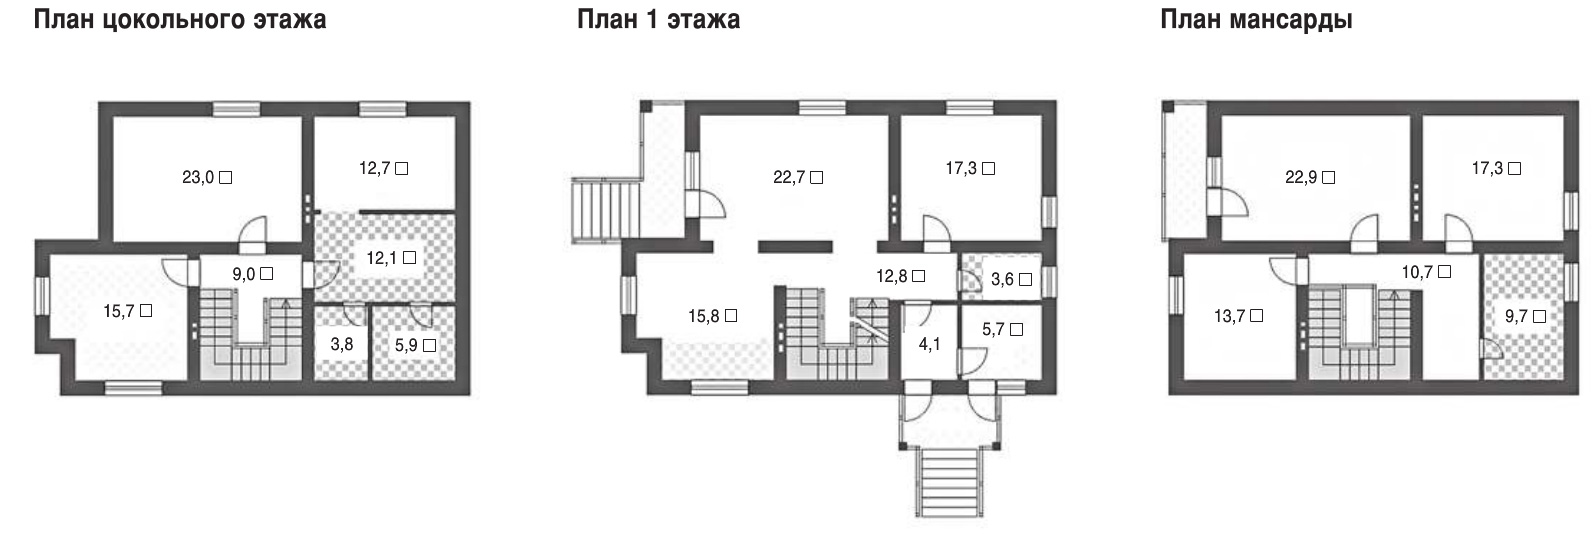 Проект каменного дома от 200 до 249 метров квадратных в Обнинске